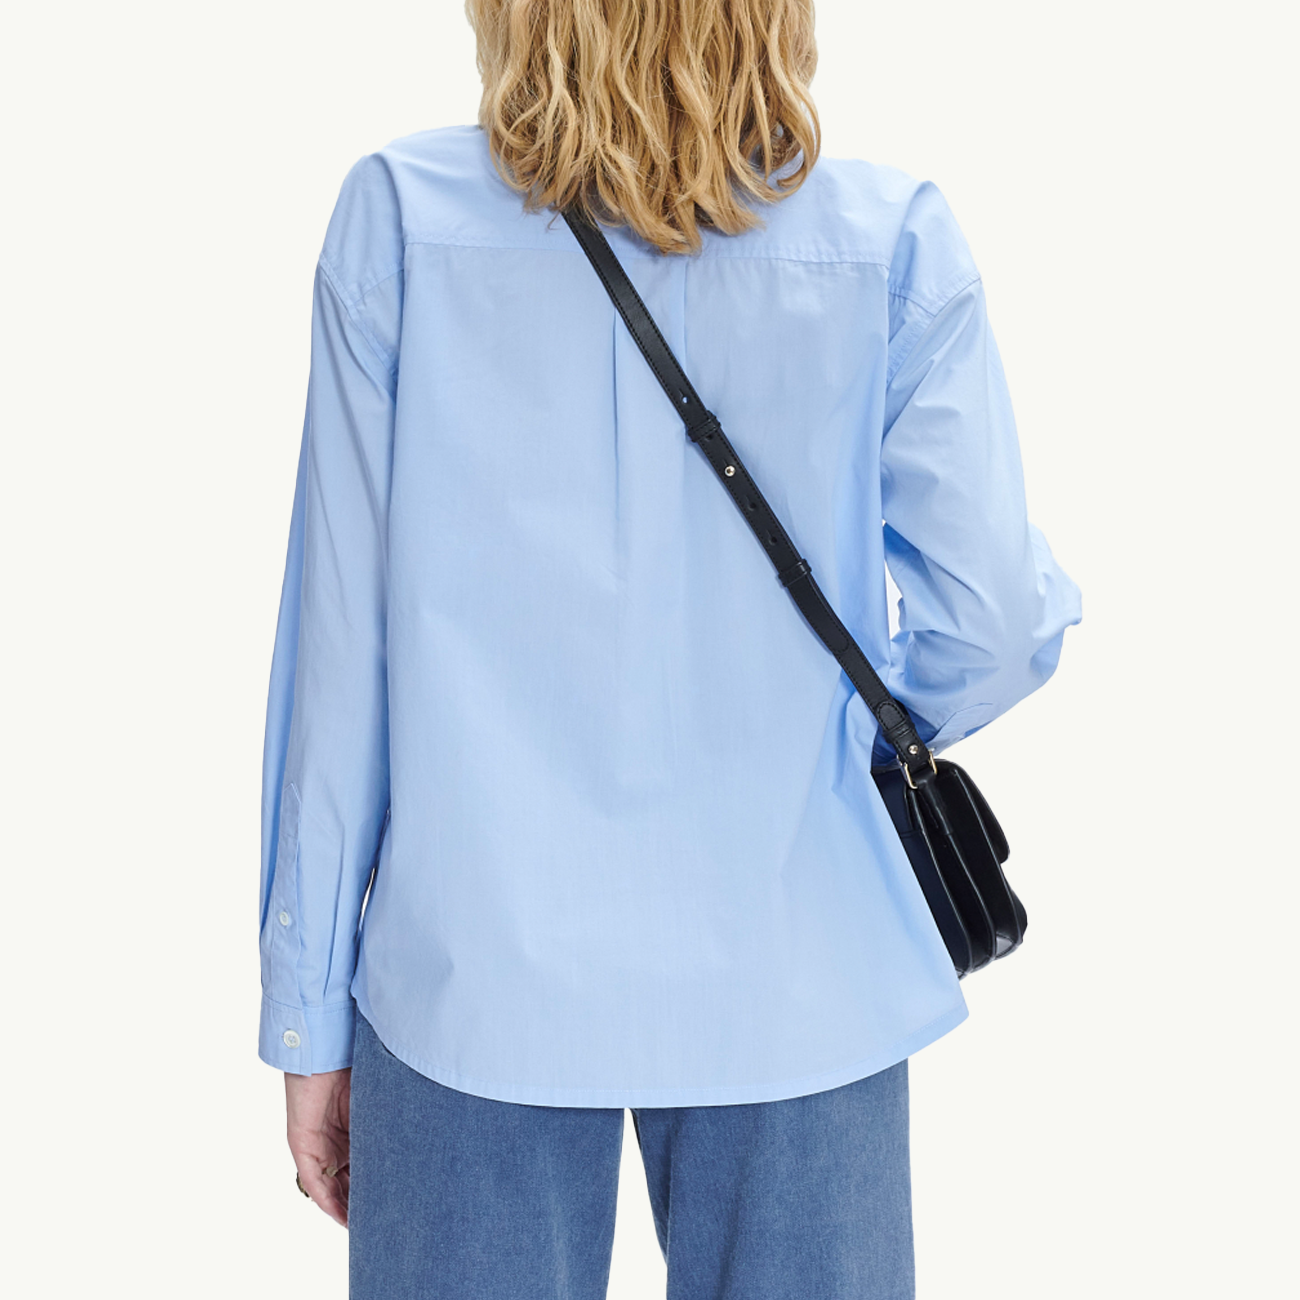 Women's Embroidered Boyfriend Shirt - Pale Blue